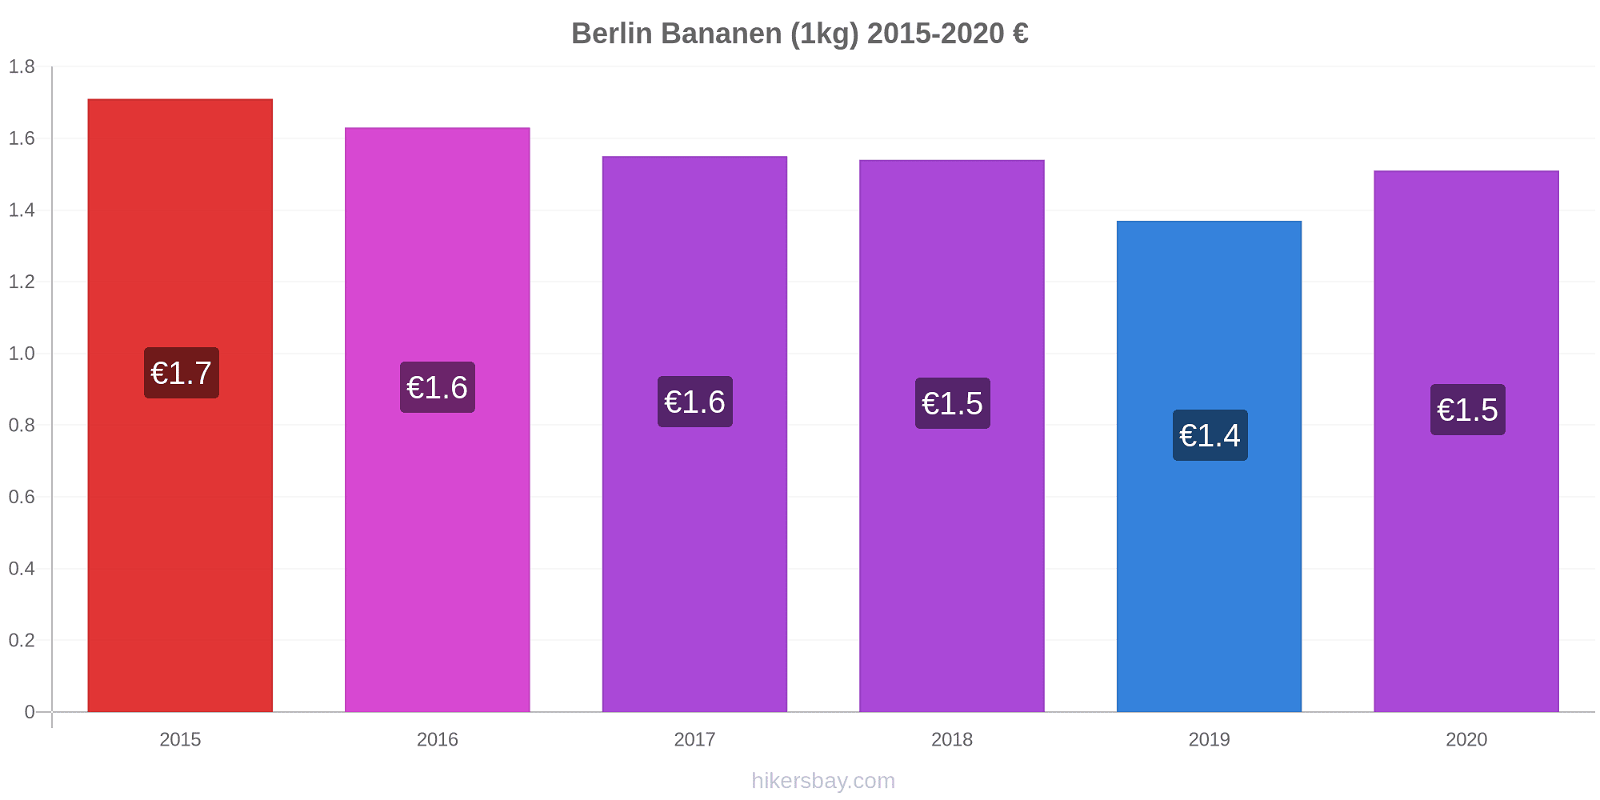 Berlin Preisänderungen Banane (1kg) hikersbay.com